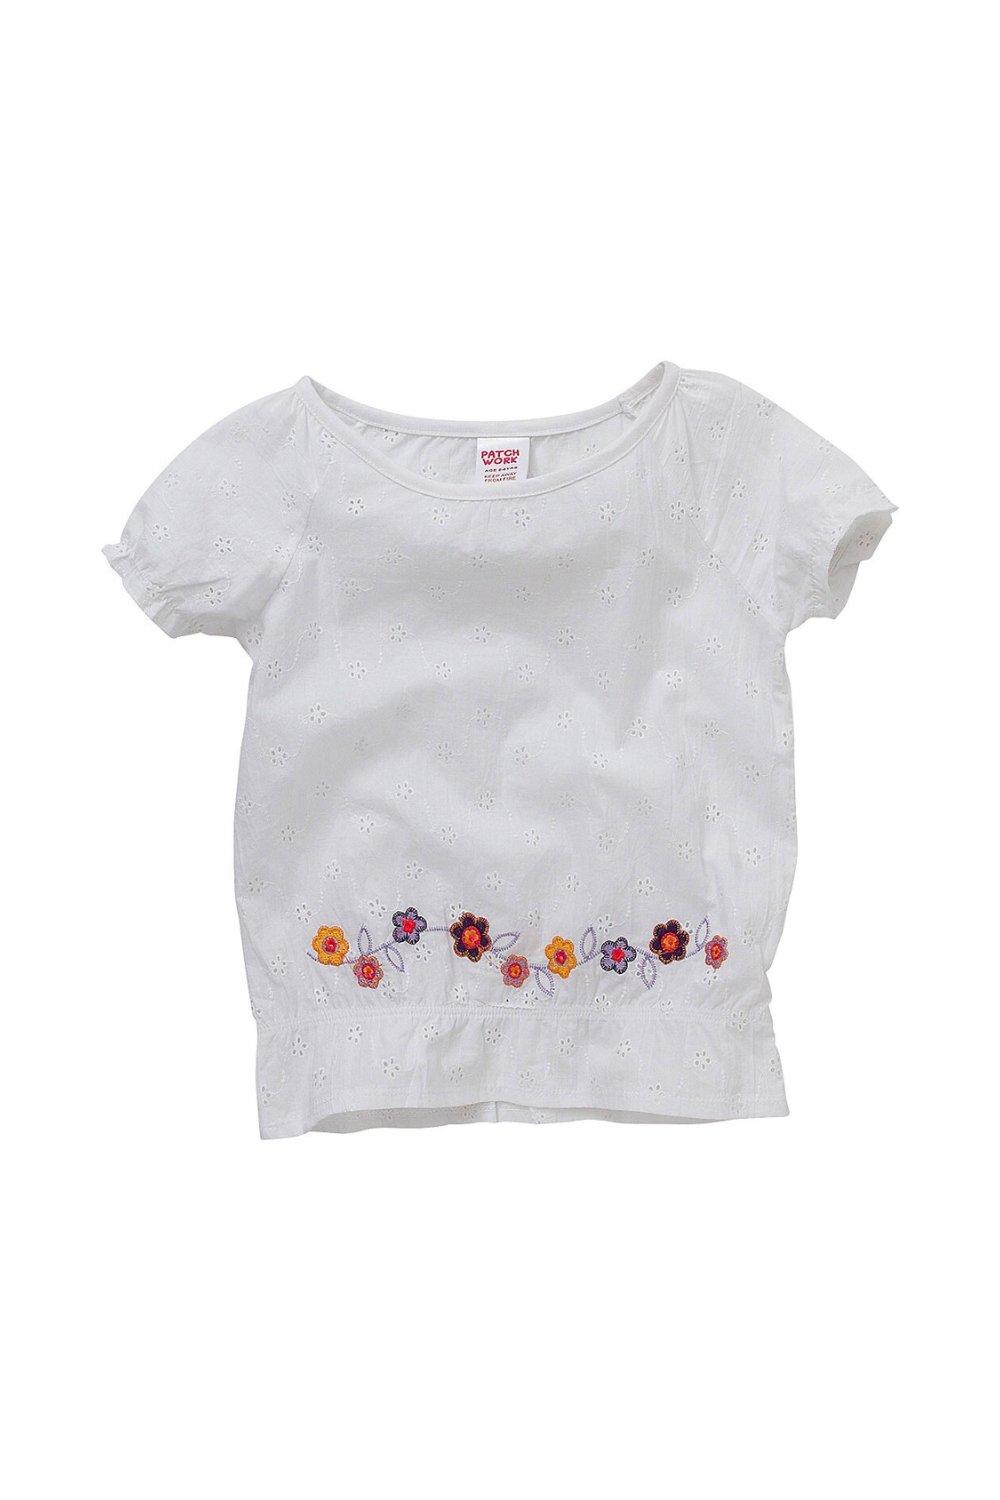 Летняя блузка с цветочной вышивкой Cozy n Dozy, белый блузка с английской вышивкой и рукавами с воланами s белый